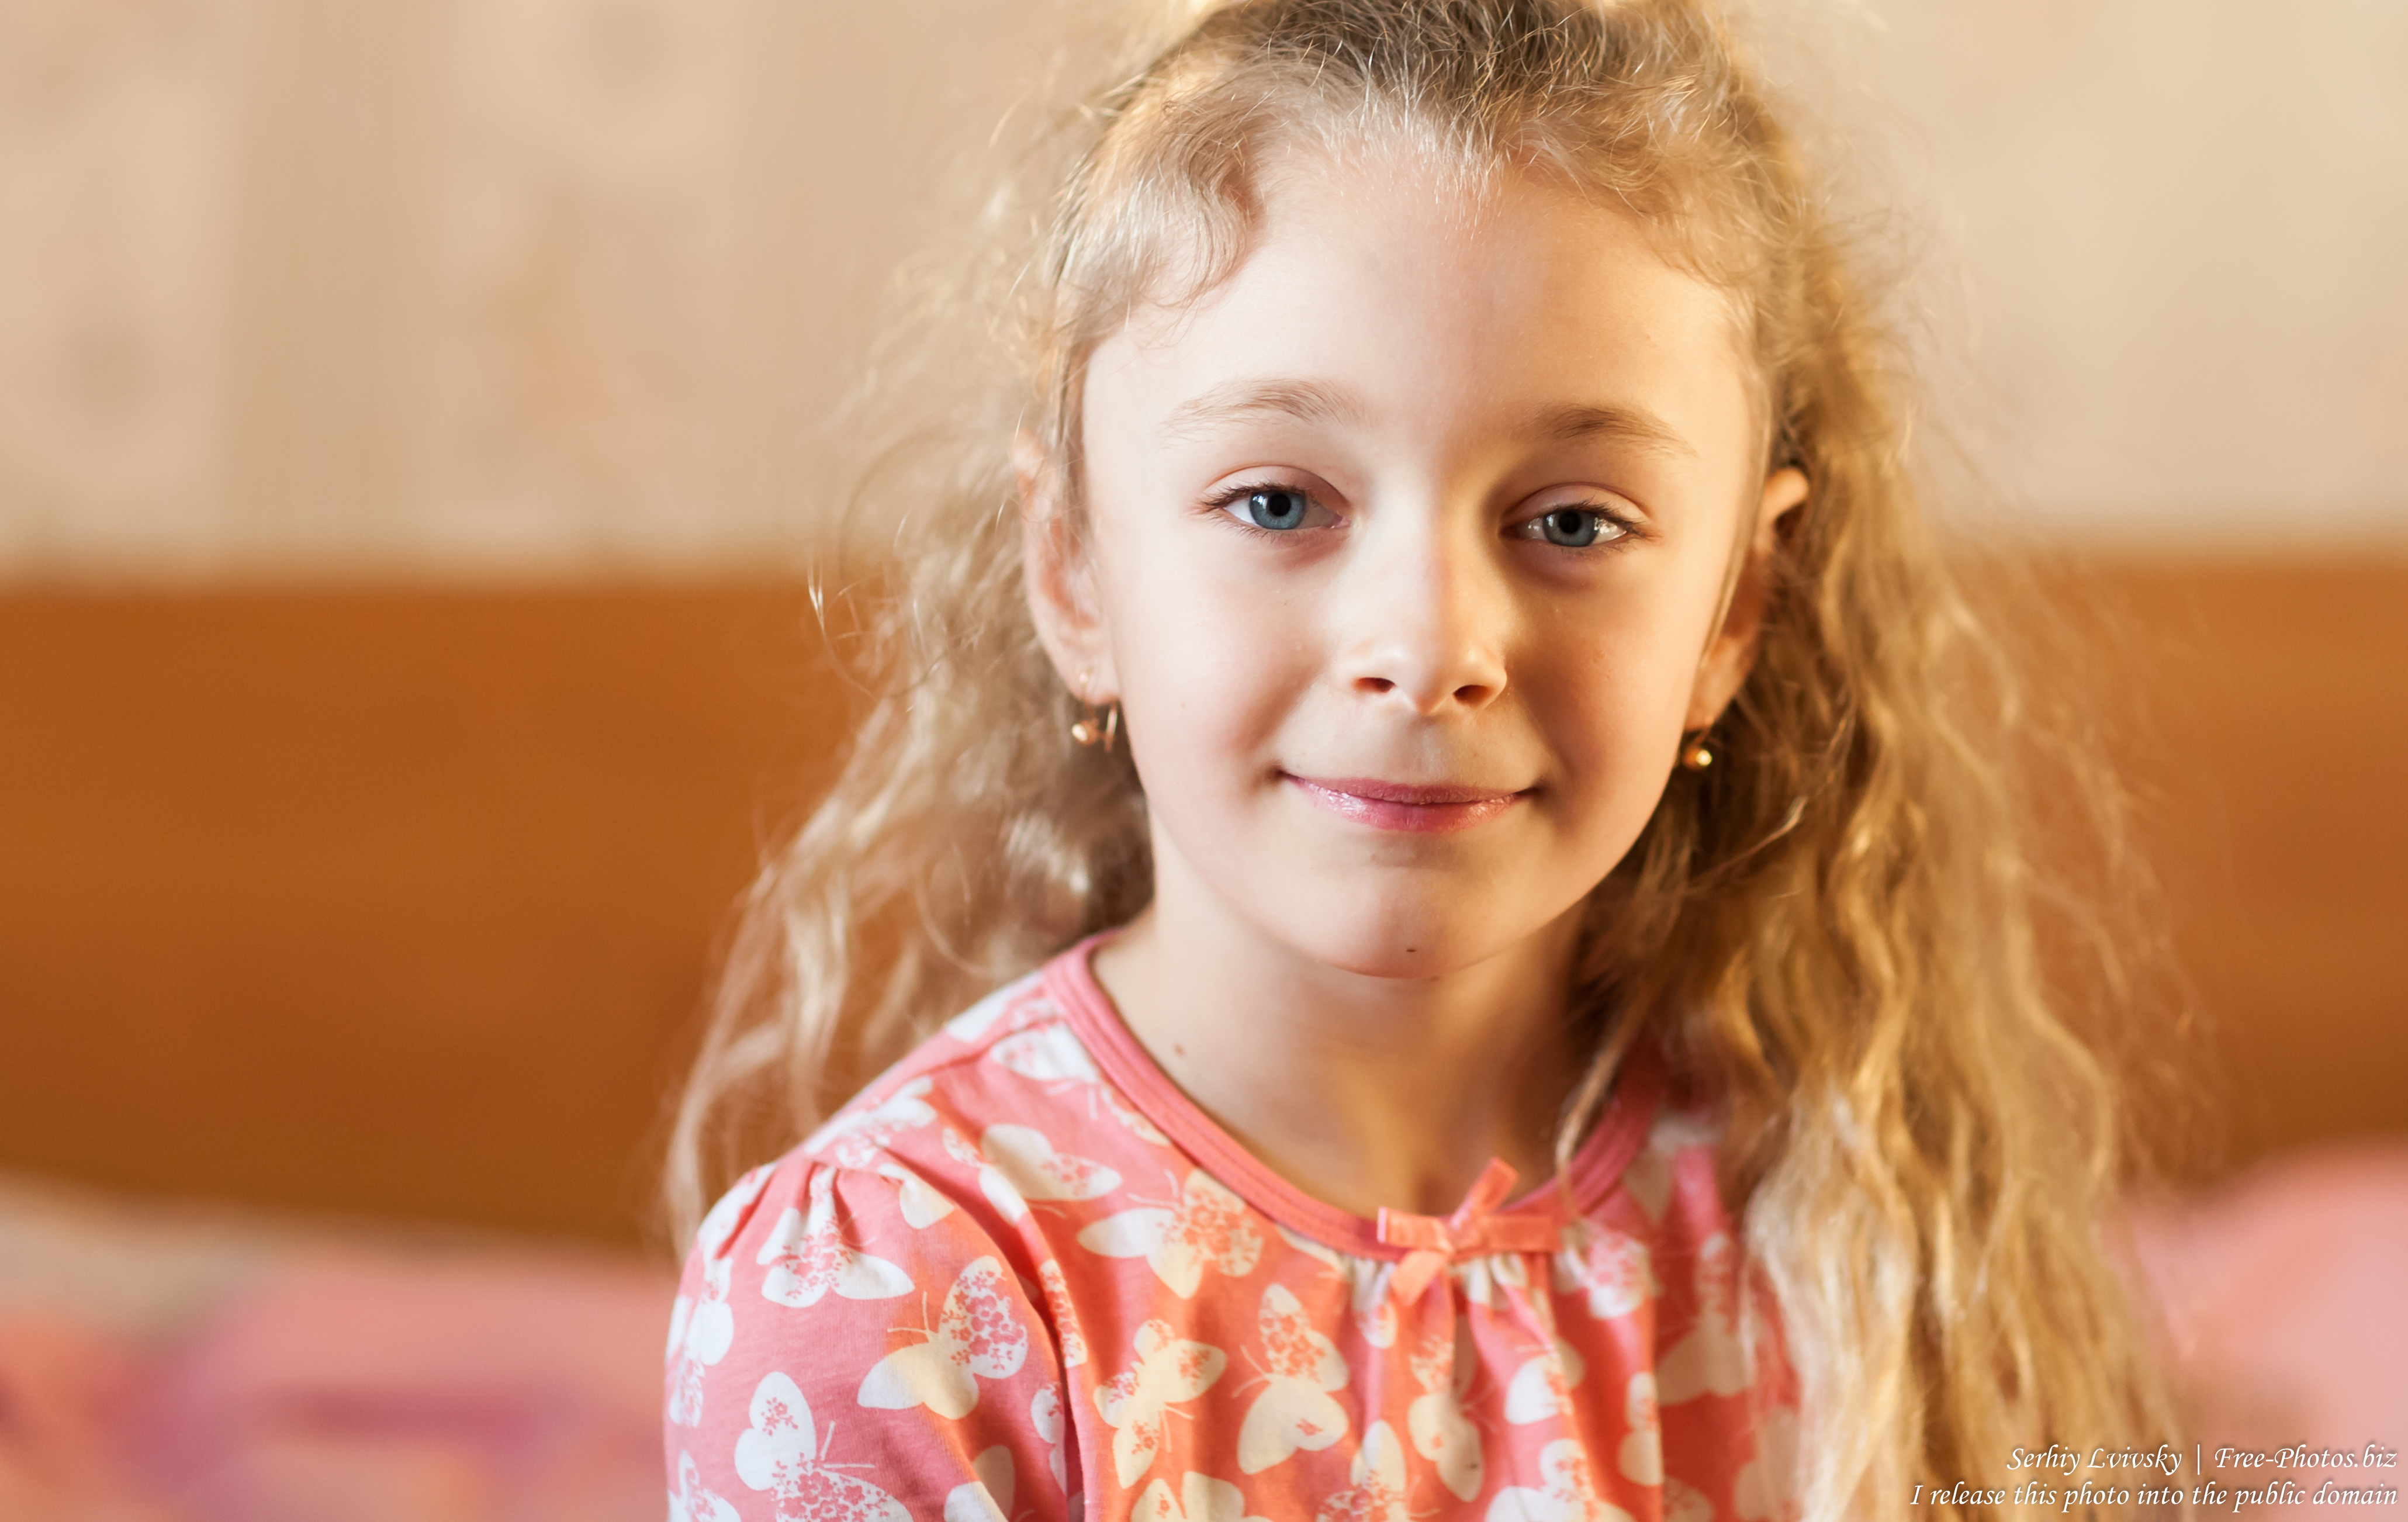 Blonde Children: The Benefits of Being a Blonde Child - wide 6